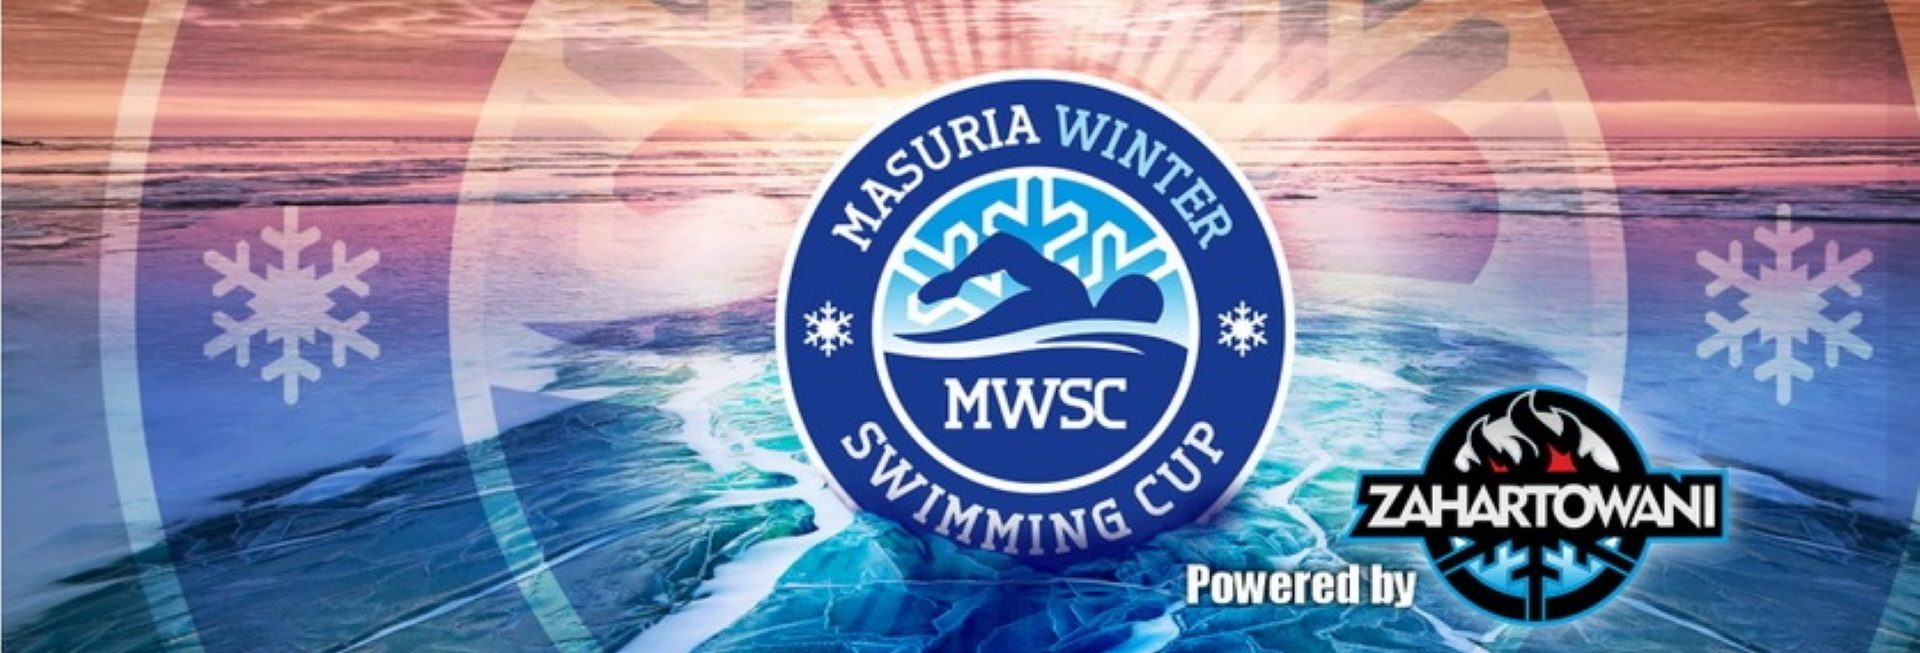 Plakat zapraszający do Ełku na Mistrzostw Mazur w Pływaniu Zimowym „MASURIA WINTER SWIMMING CUP Ełk. 